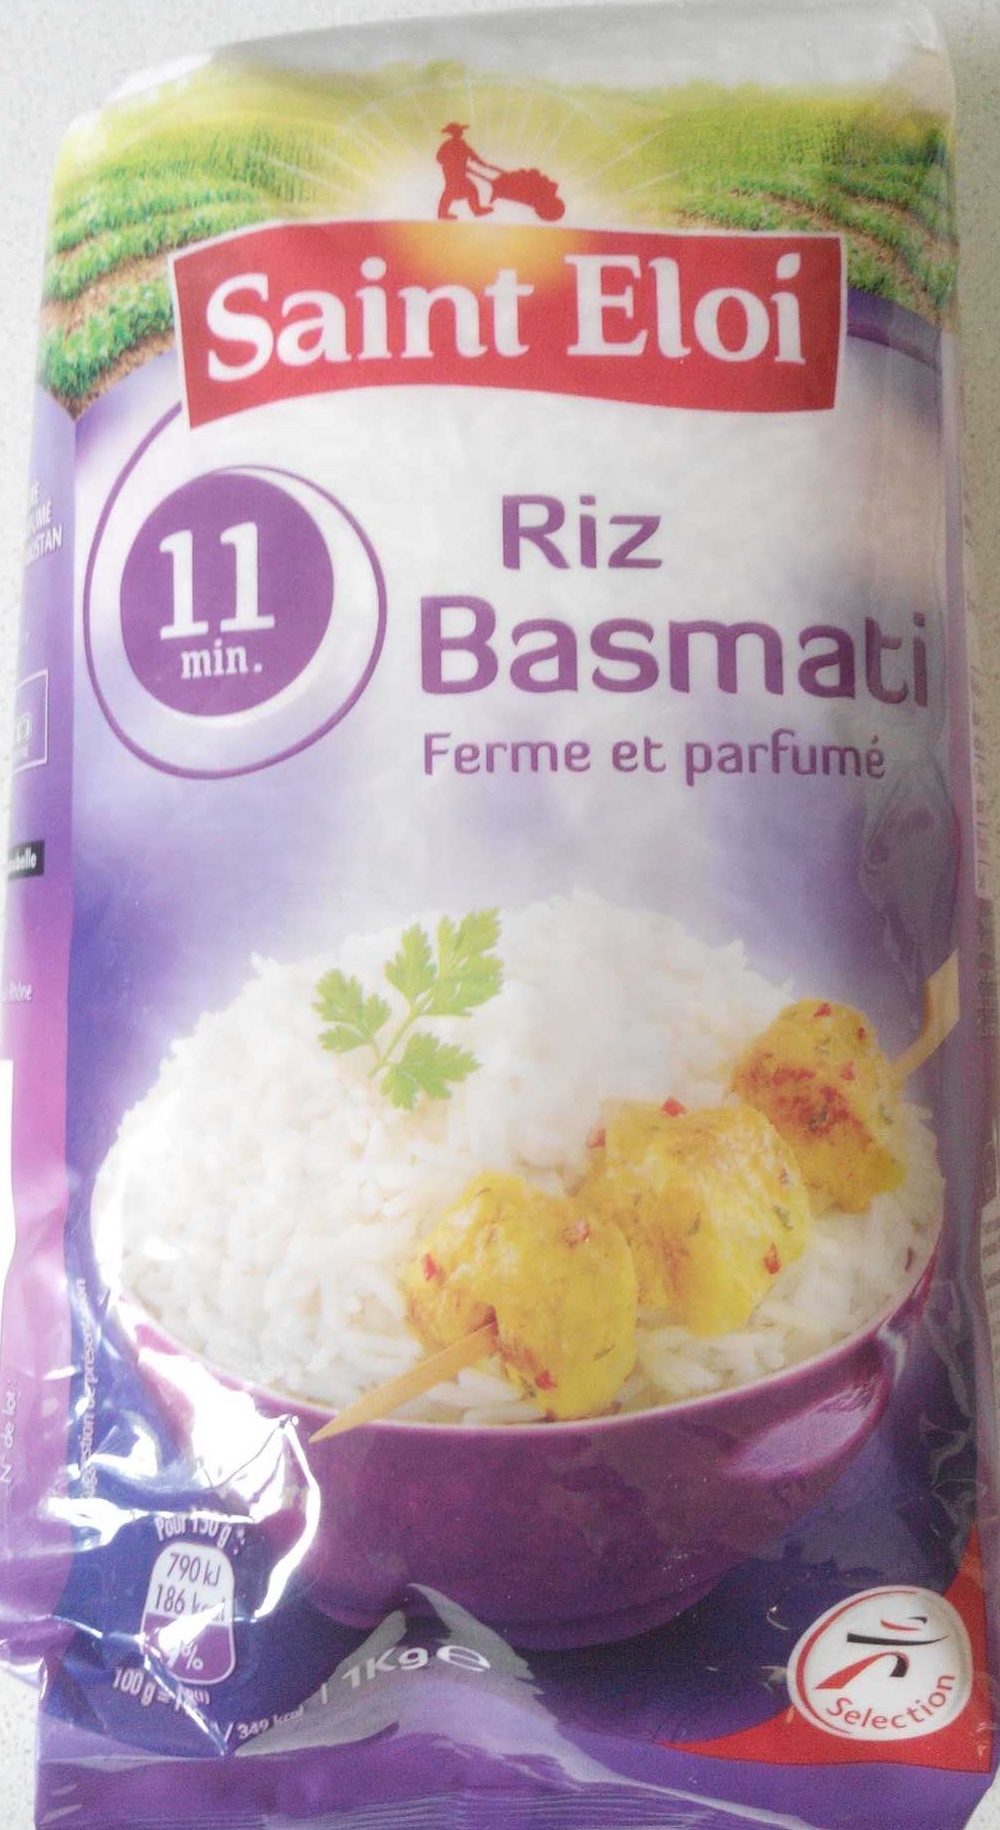 Riz Basmati ferme et parfumé - Product - fr